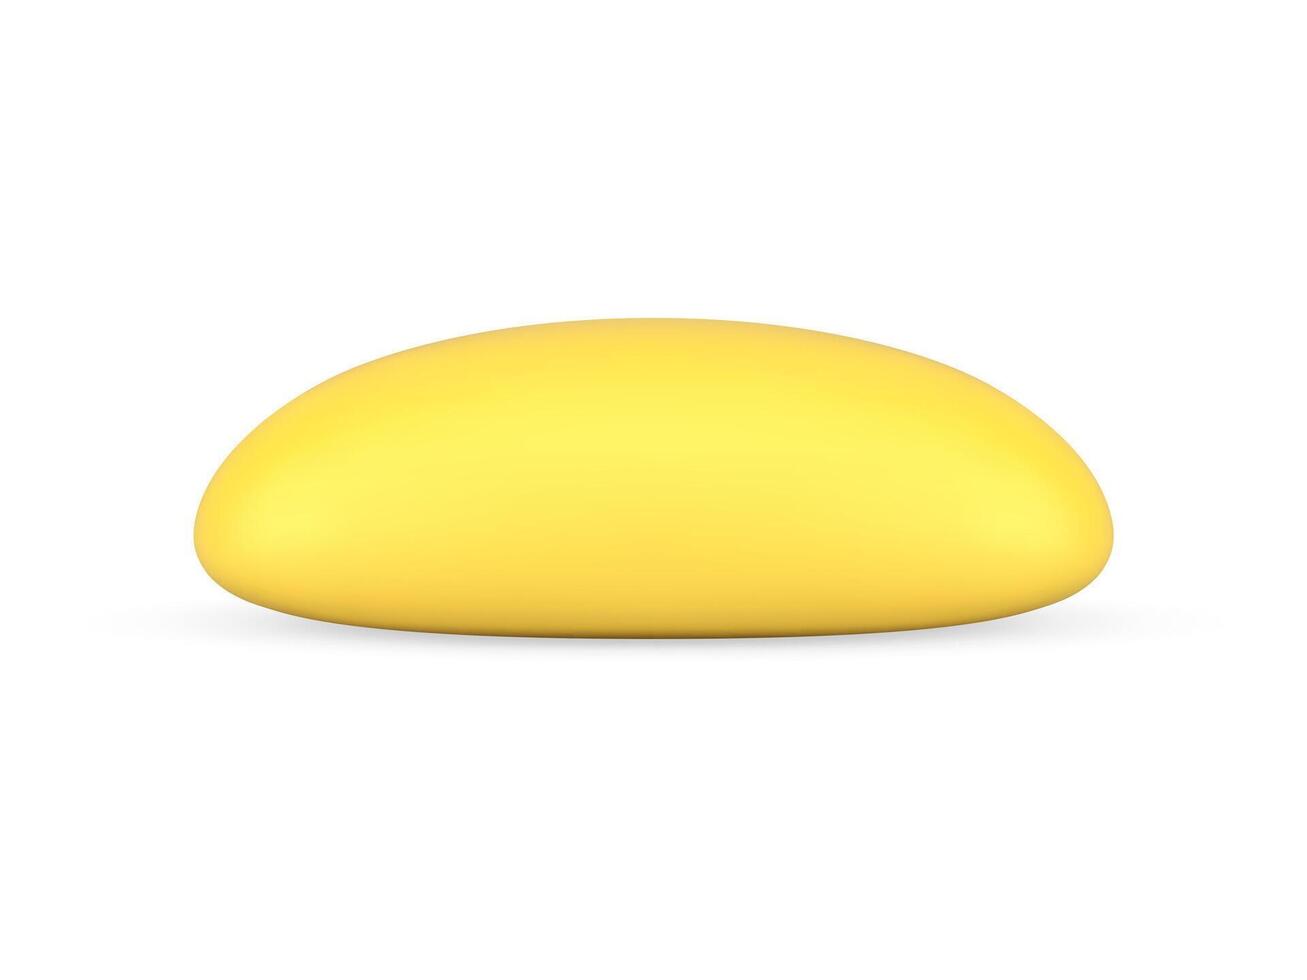 Gelb Weizen hausgemacht lange Laib frisch Backen Essen Produkt realistisch 3d Symbol Illustration vektor